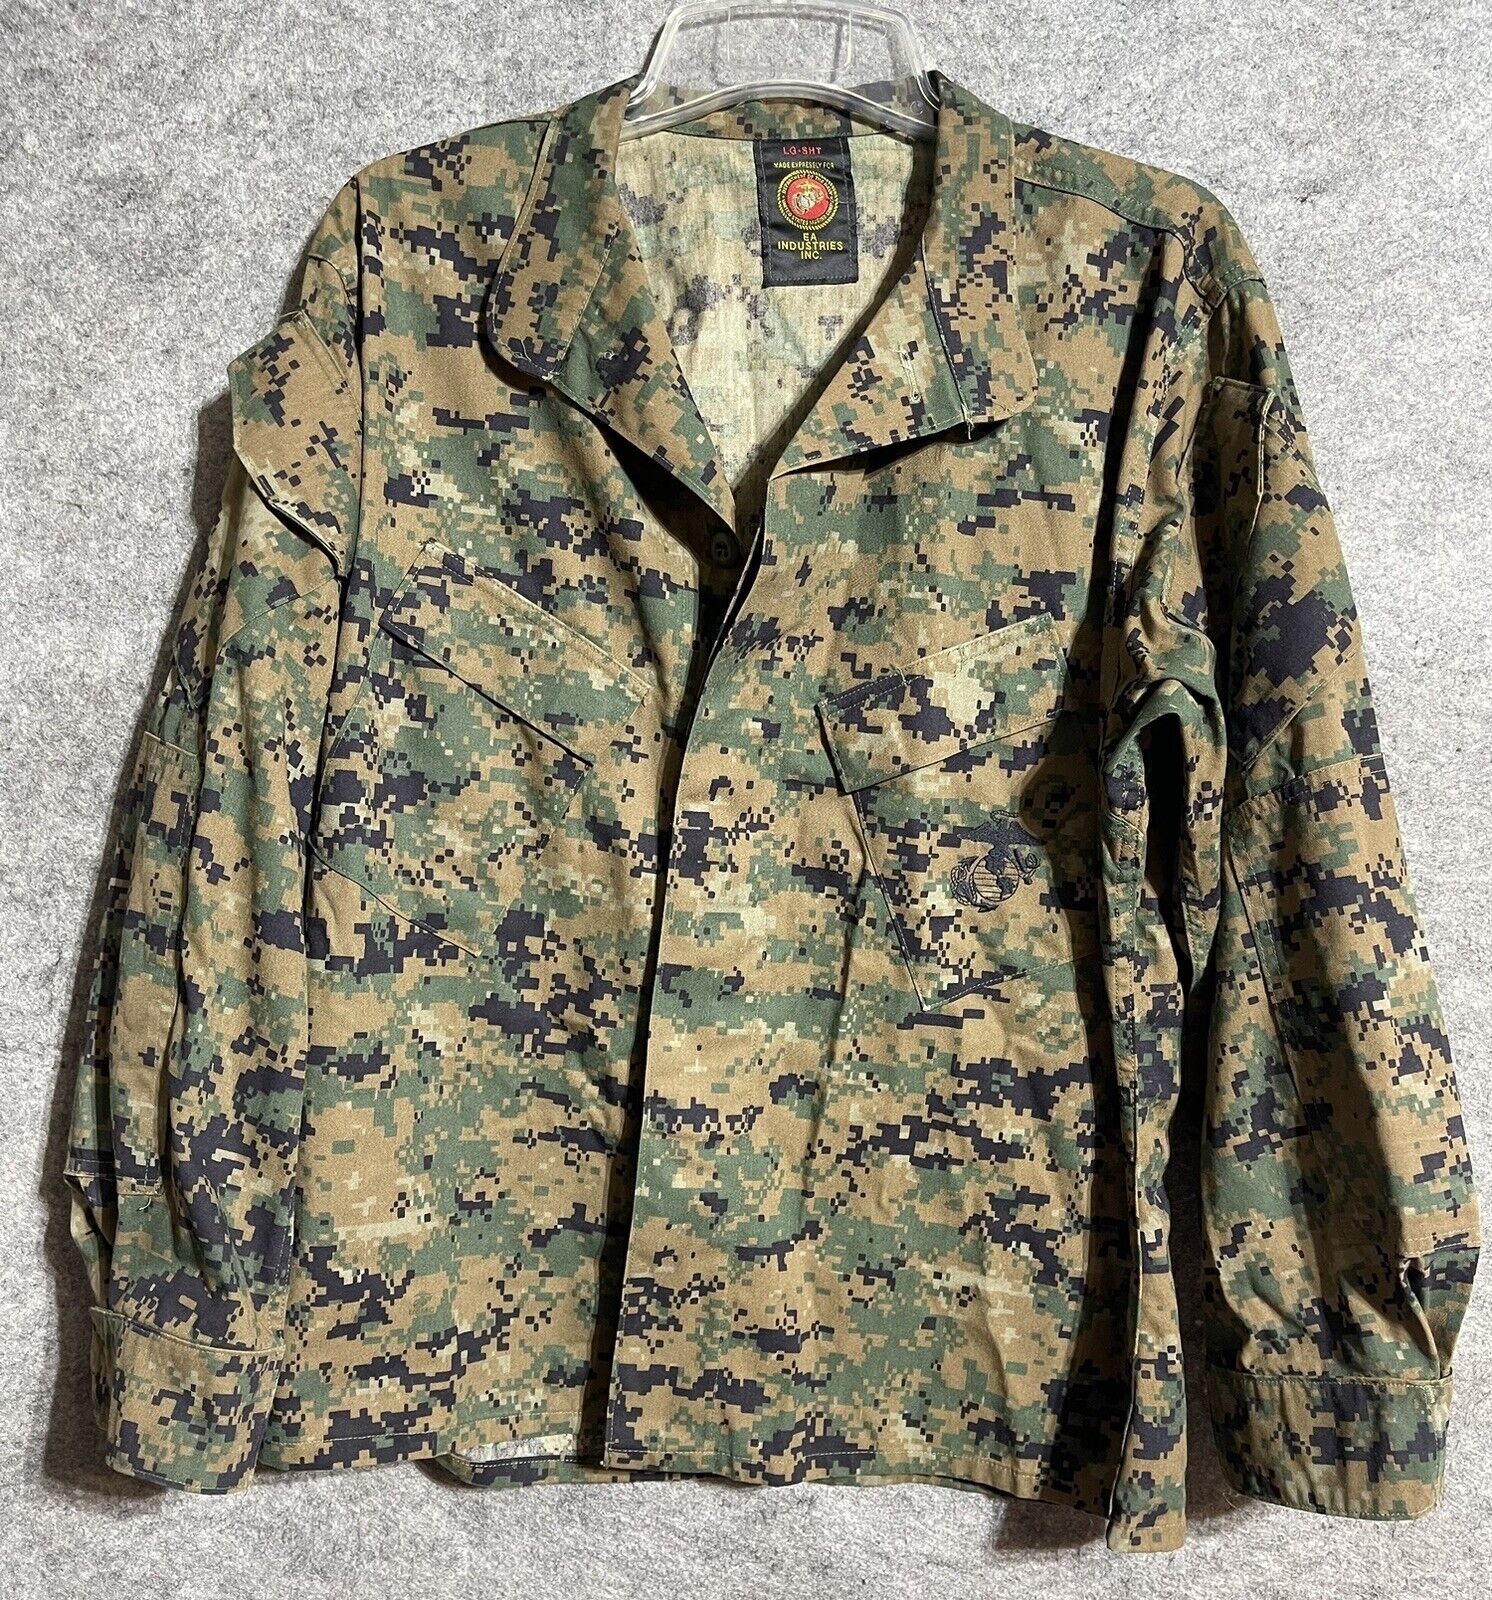 USMC Marpat Woodland Combat Field Shirt Jacket Blouse Marine Corps Large Short